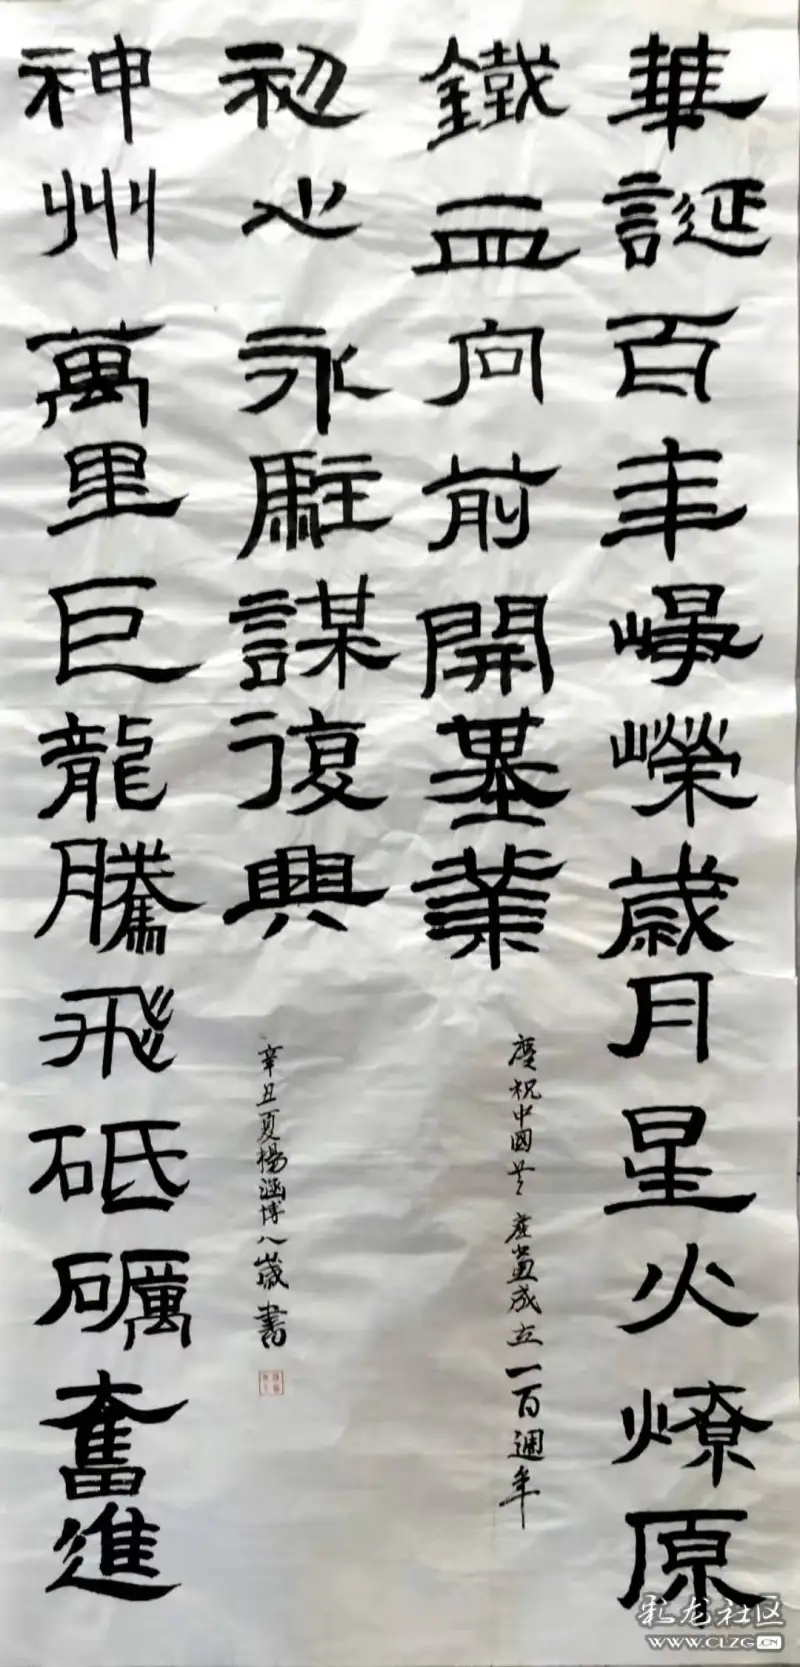 二年级杨涵博同学毛笔隶书作品献礼建党百年